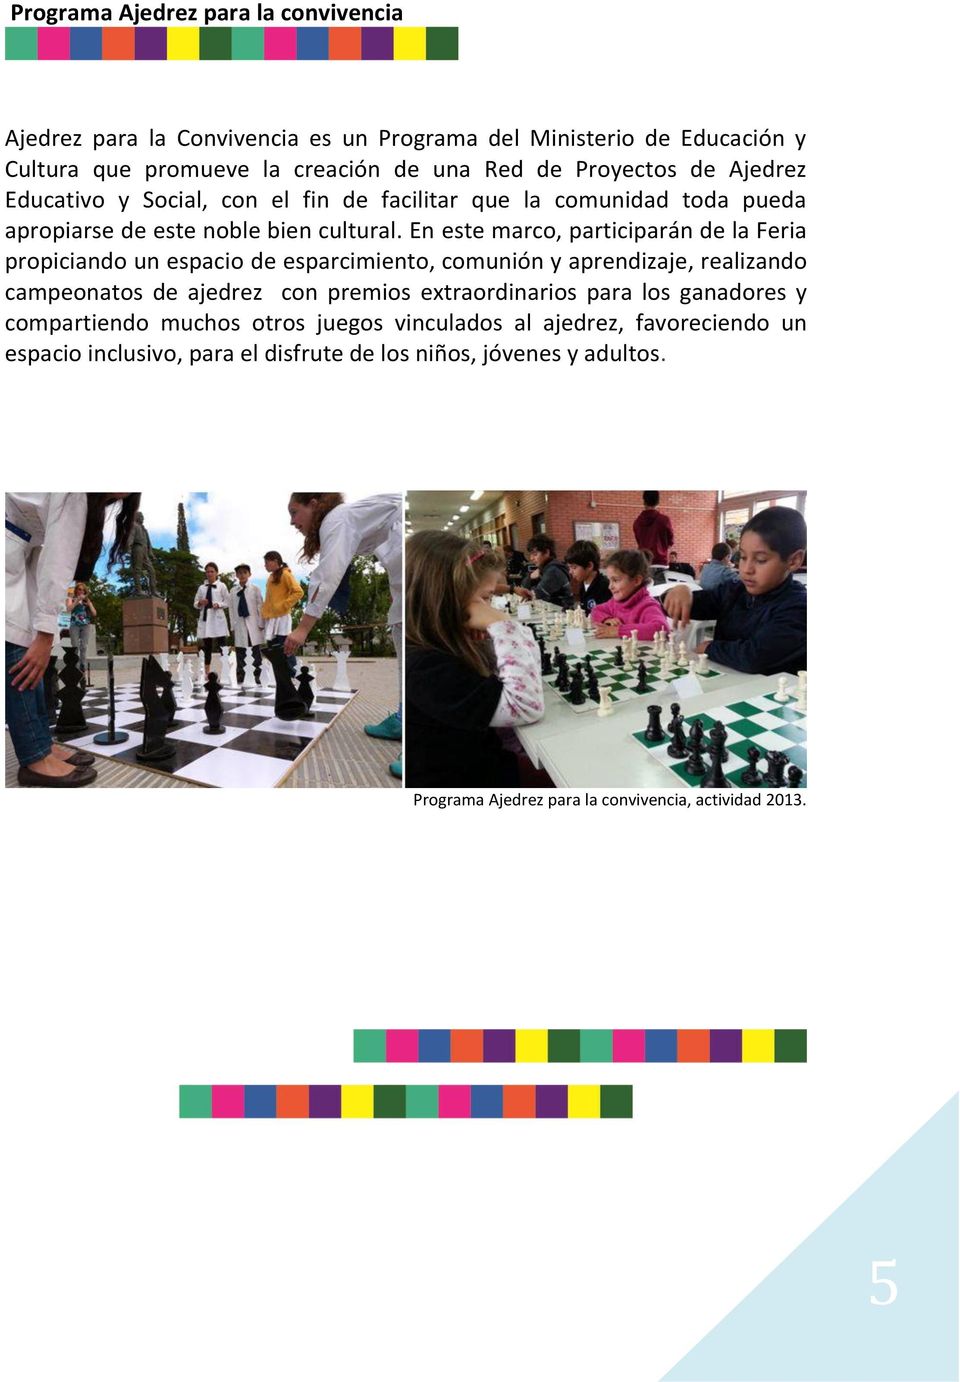 En este marco, participarán de la Feria propiciando un espacio de esparcimiento, comunión y aprendizaje, realizando campeonatos de ajedrez con premios extraordinarios